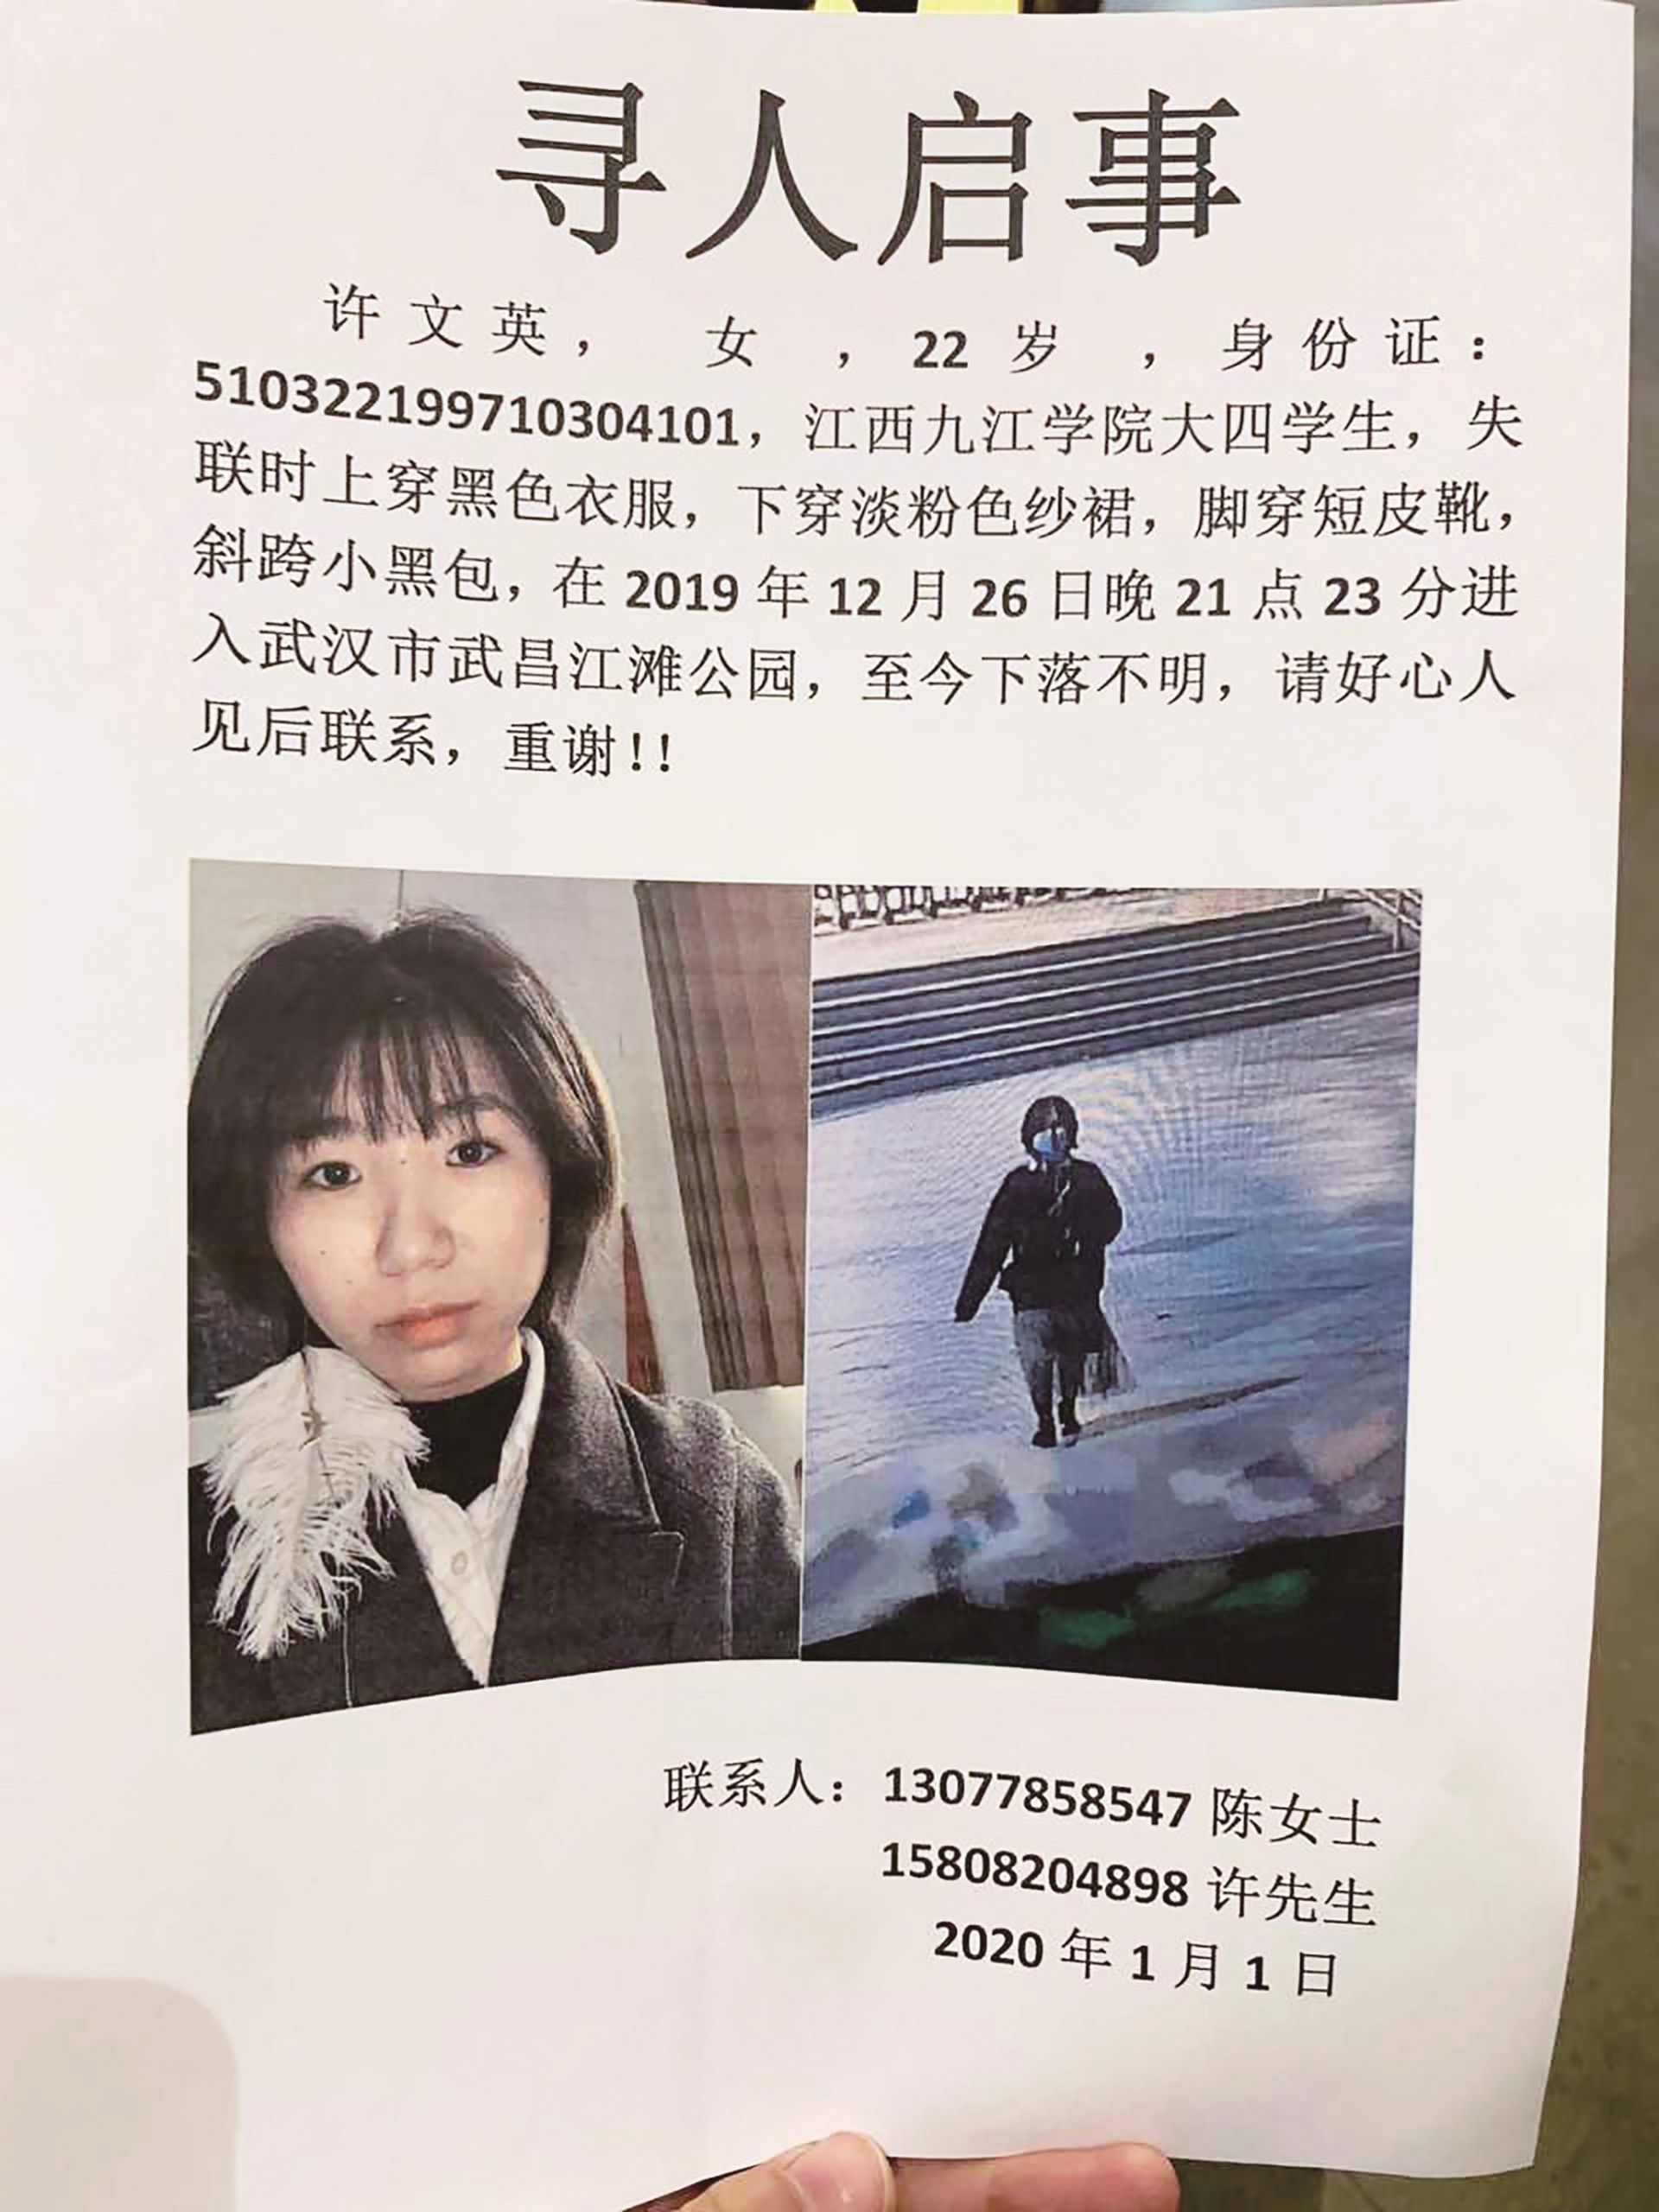 寻人启事上的照片楚天都市报讯(记者张皓)女儿在武昌江滩失联,父母从